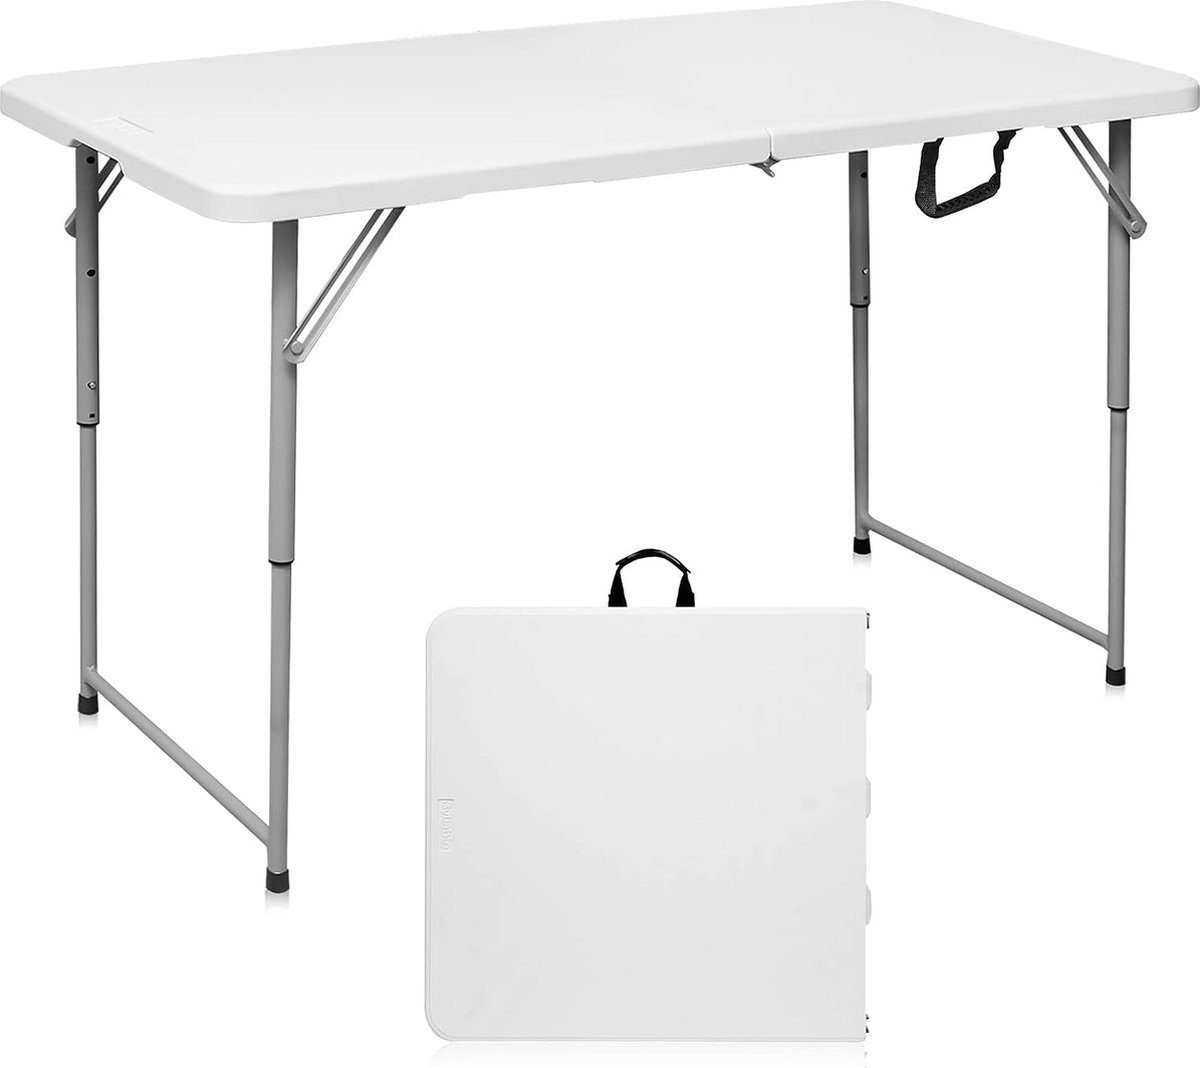 BOTC Klapptisch Camping-Tisch Multifunktionstisch (Markttisch Tapeziertisch), Klappbarer Tisch - 120*60CM - Klappbarer Tisch Weiß/Grau